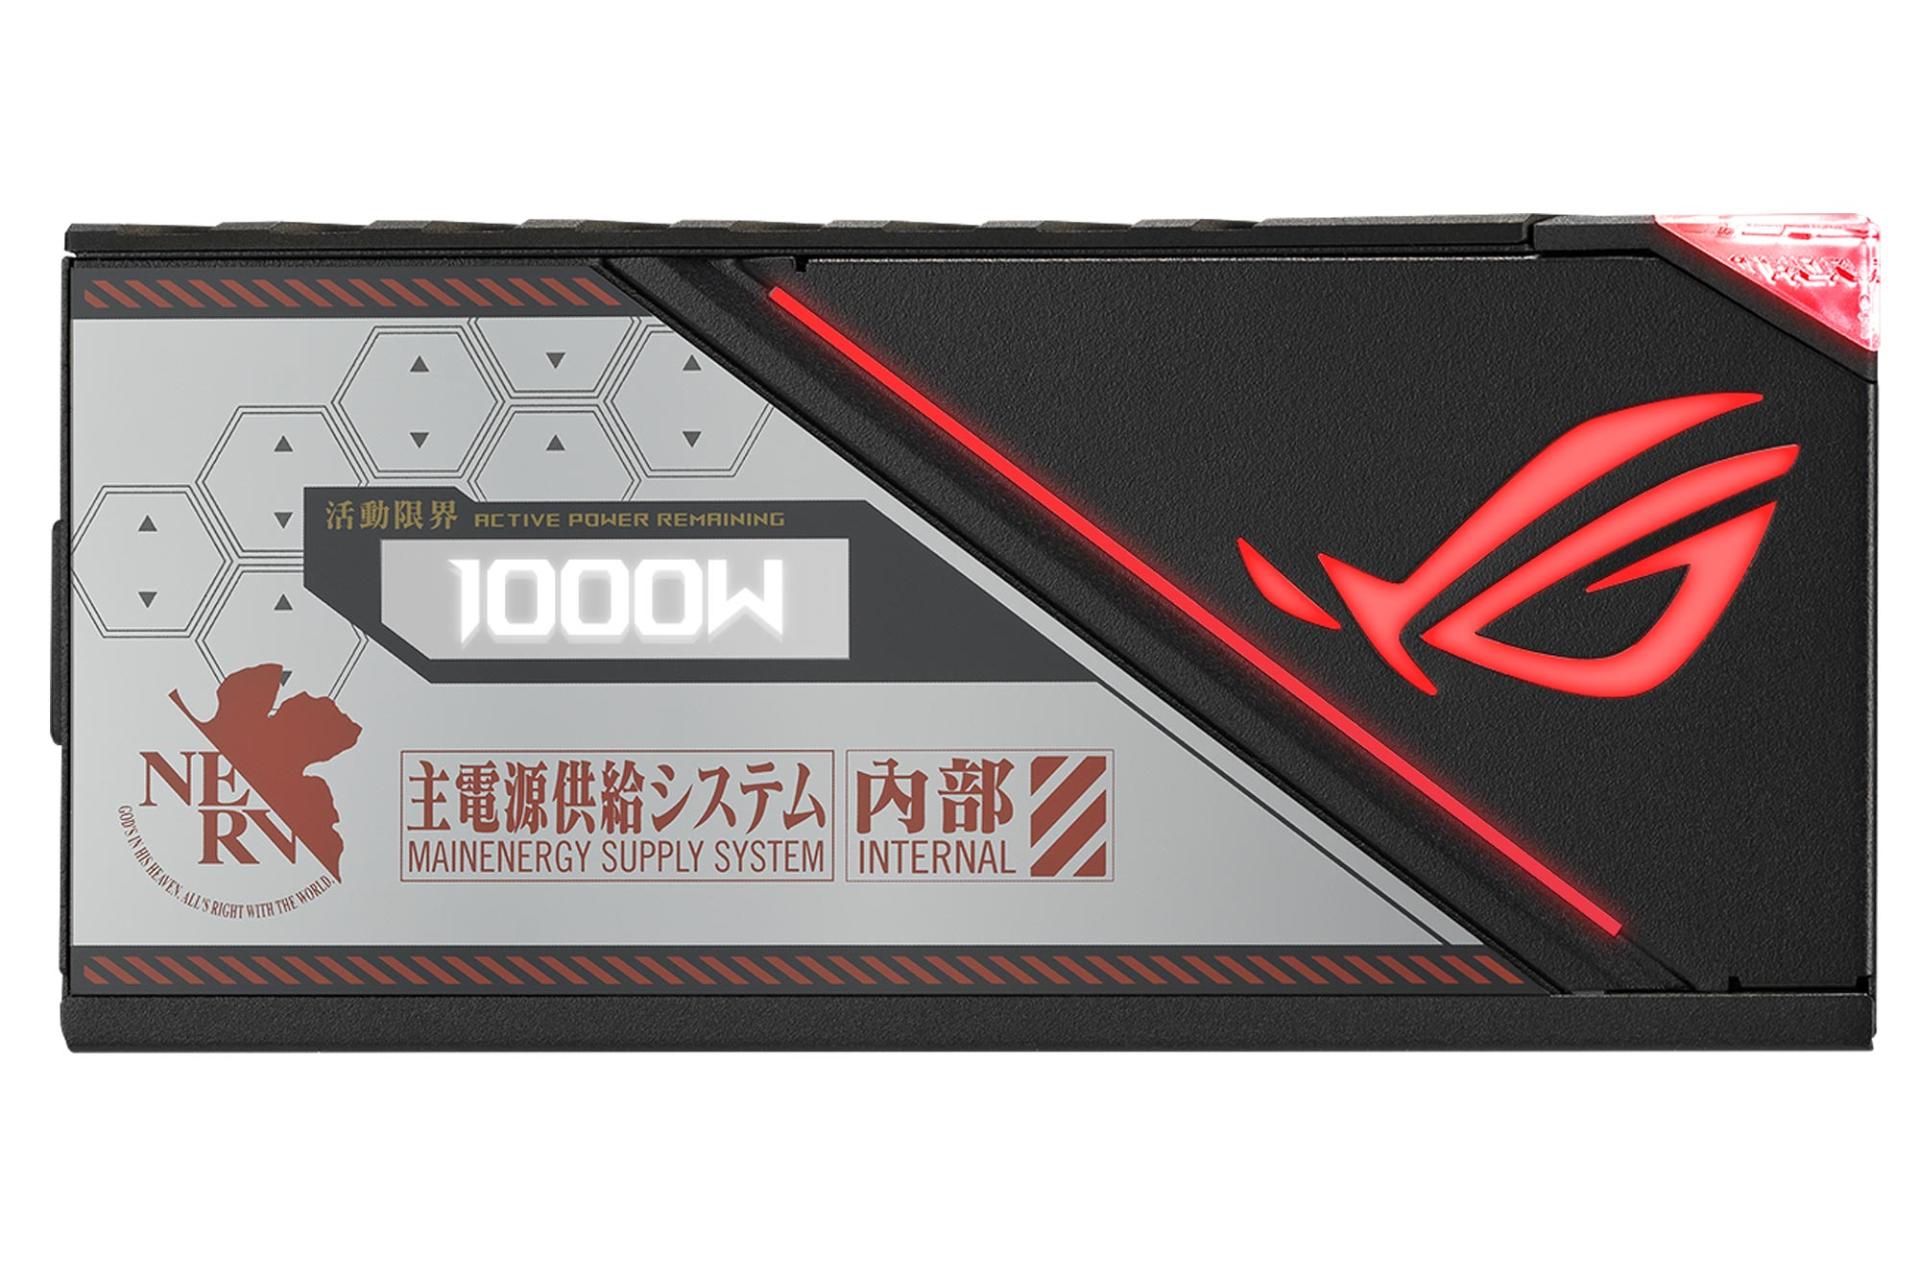 نمایشگر پاور کامپیوتر ایسوس ROG Thor 1000W Platinum II EVA Edition با توان 1000 وات